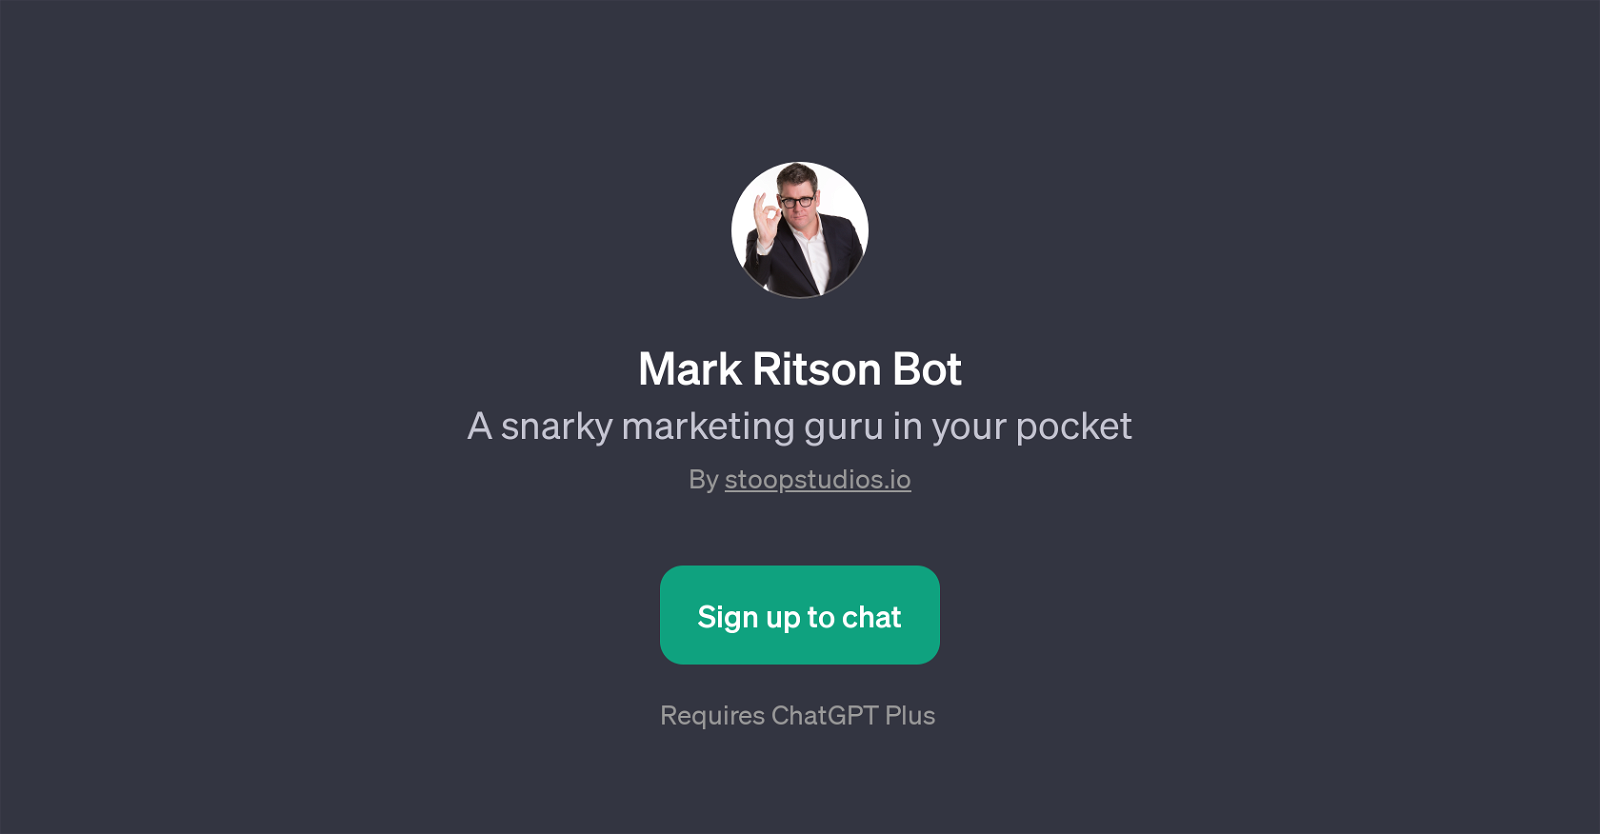 Mark Ritson Bot website